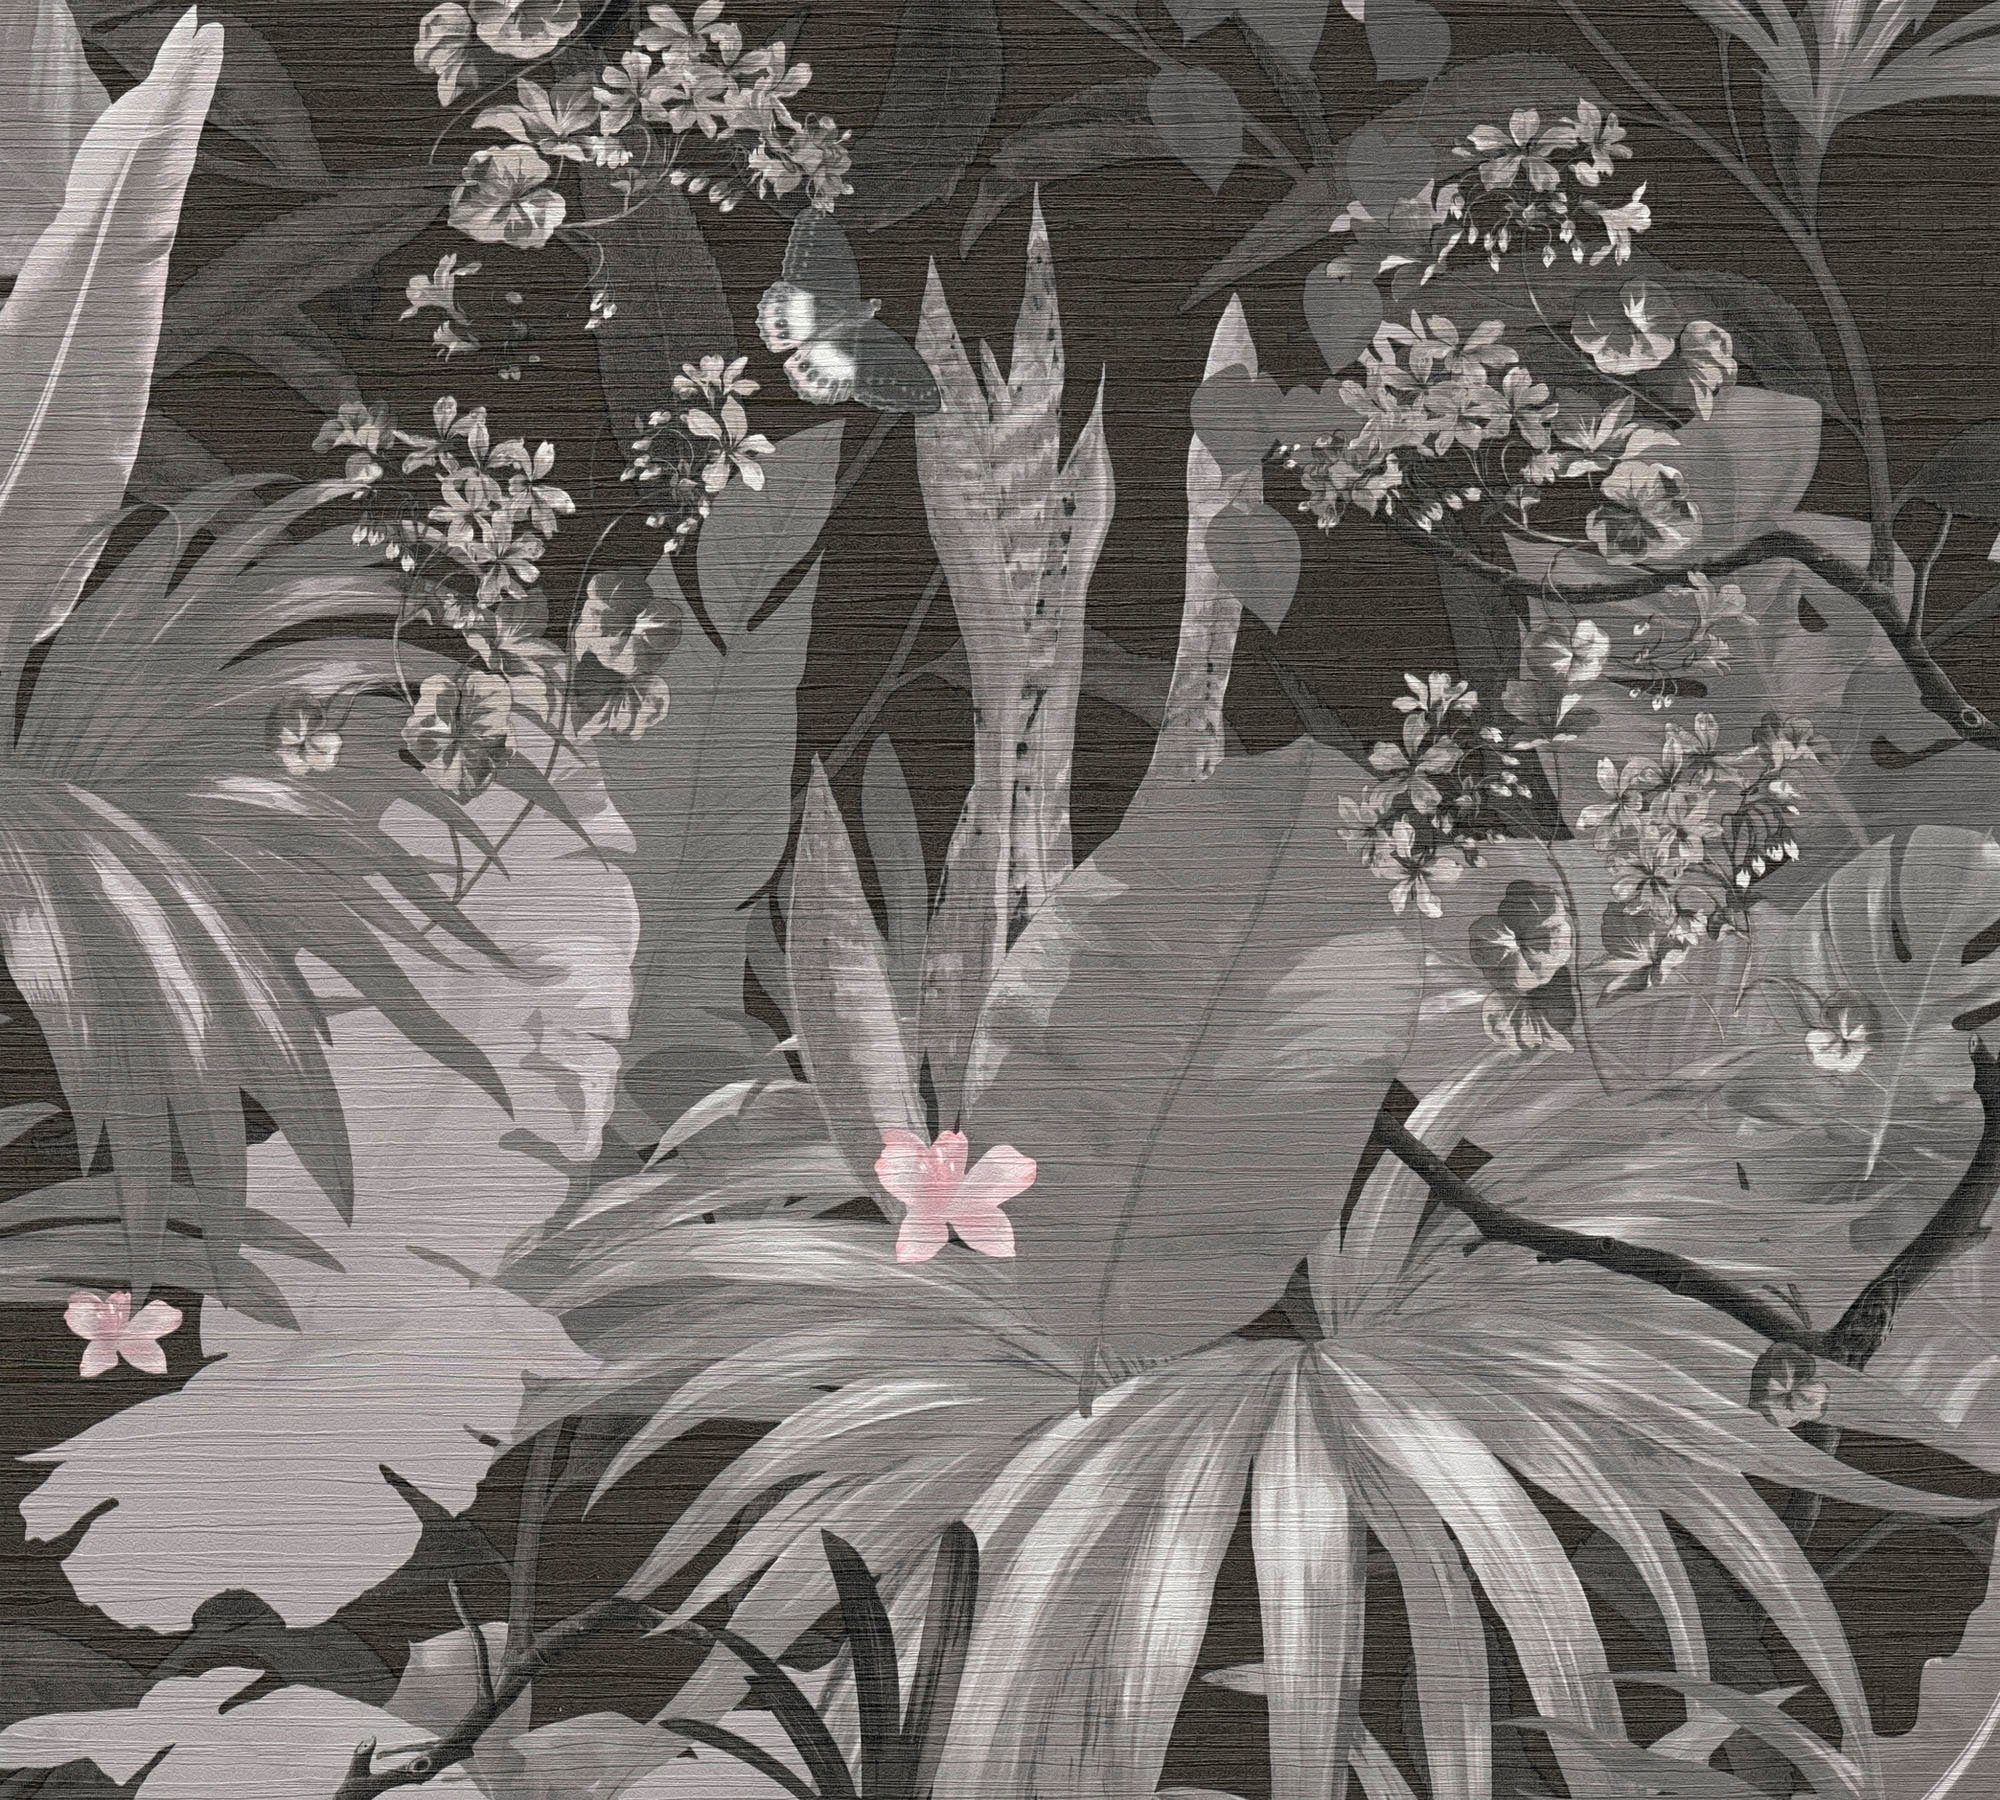 Vliestapete living Dschungeloptik Palmen natürlich, Desert strukturiert, grau/schwarz Lodge, naturalistisch, botanisch, walls Tapete